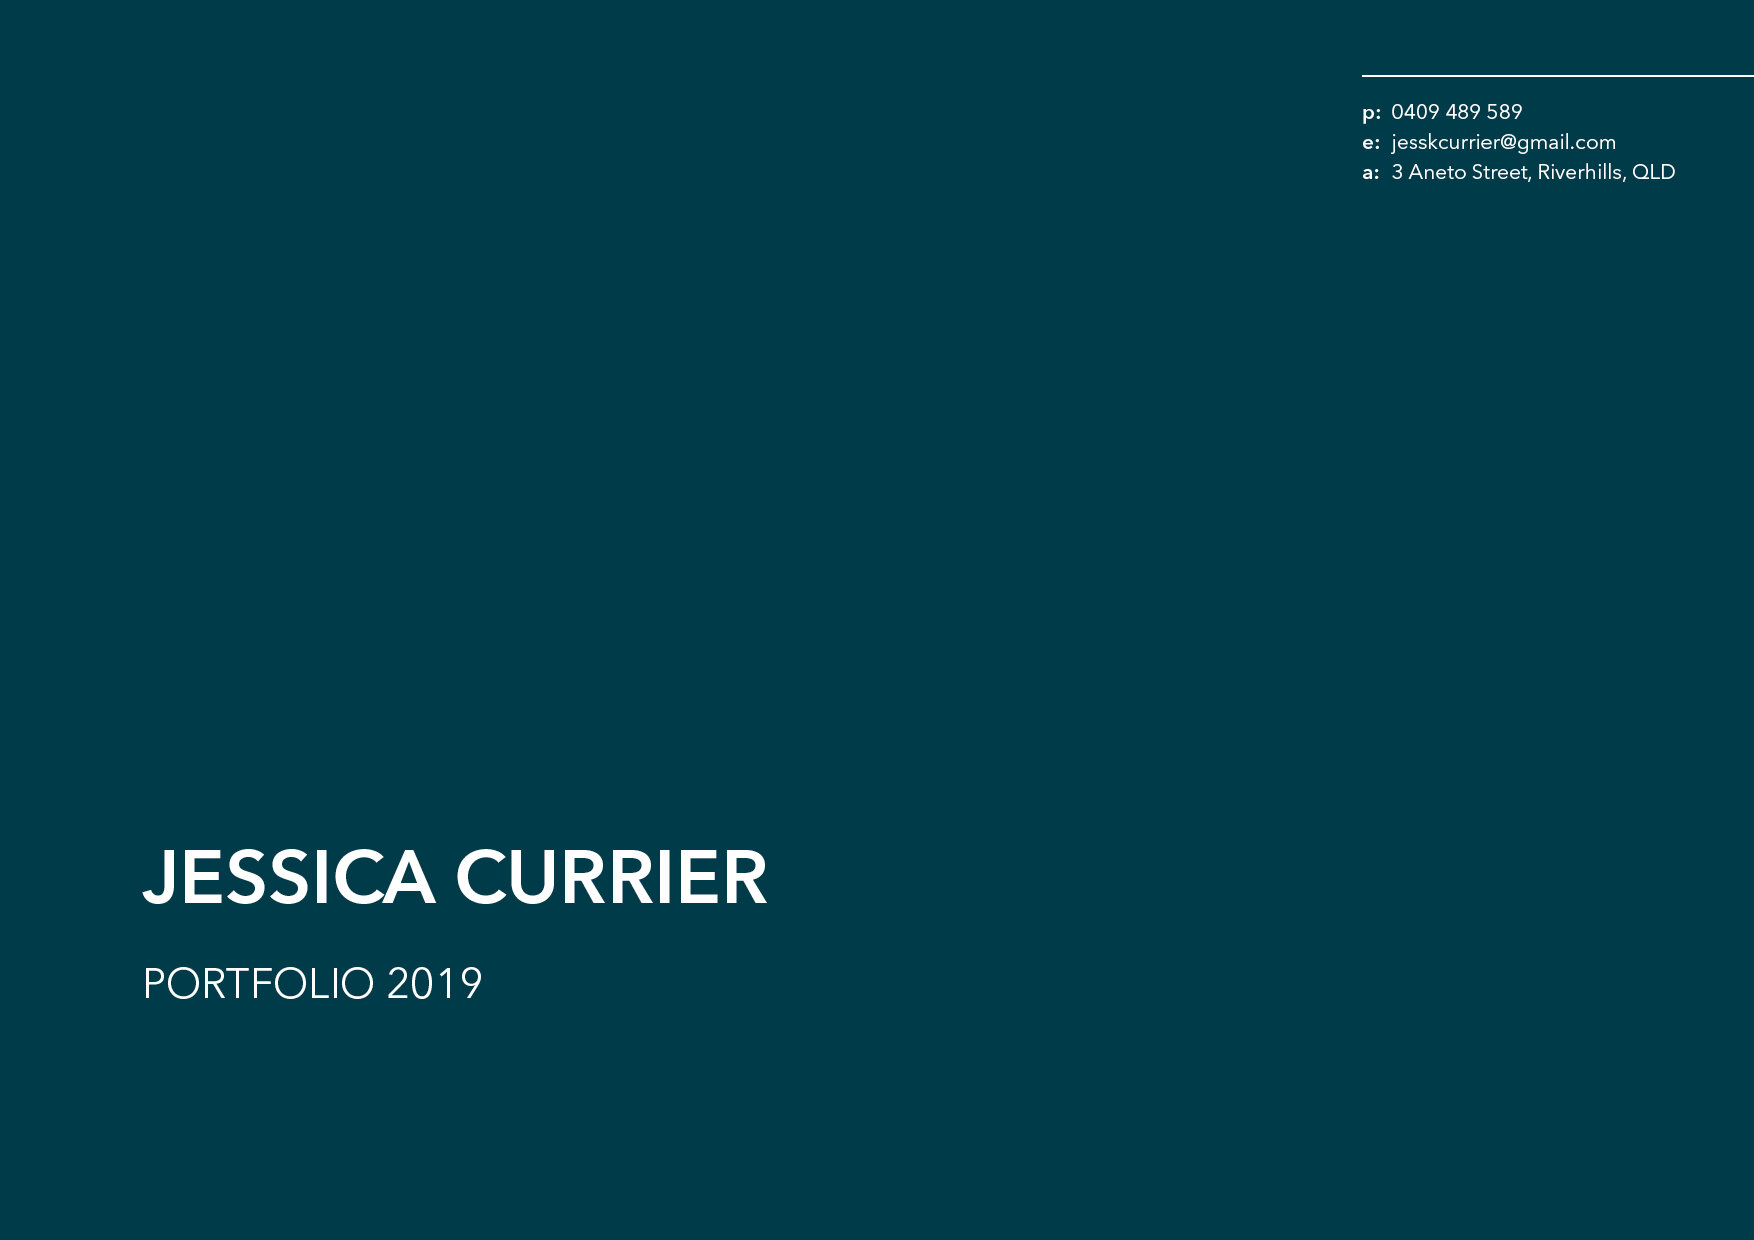 Jessica Currier Portfolio 2019B.jpg